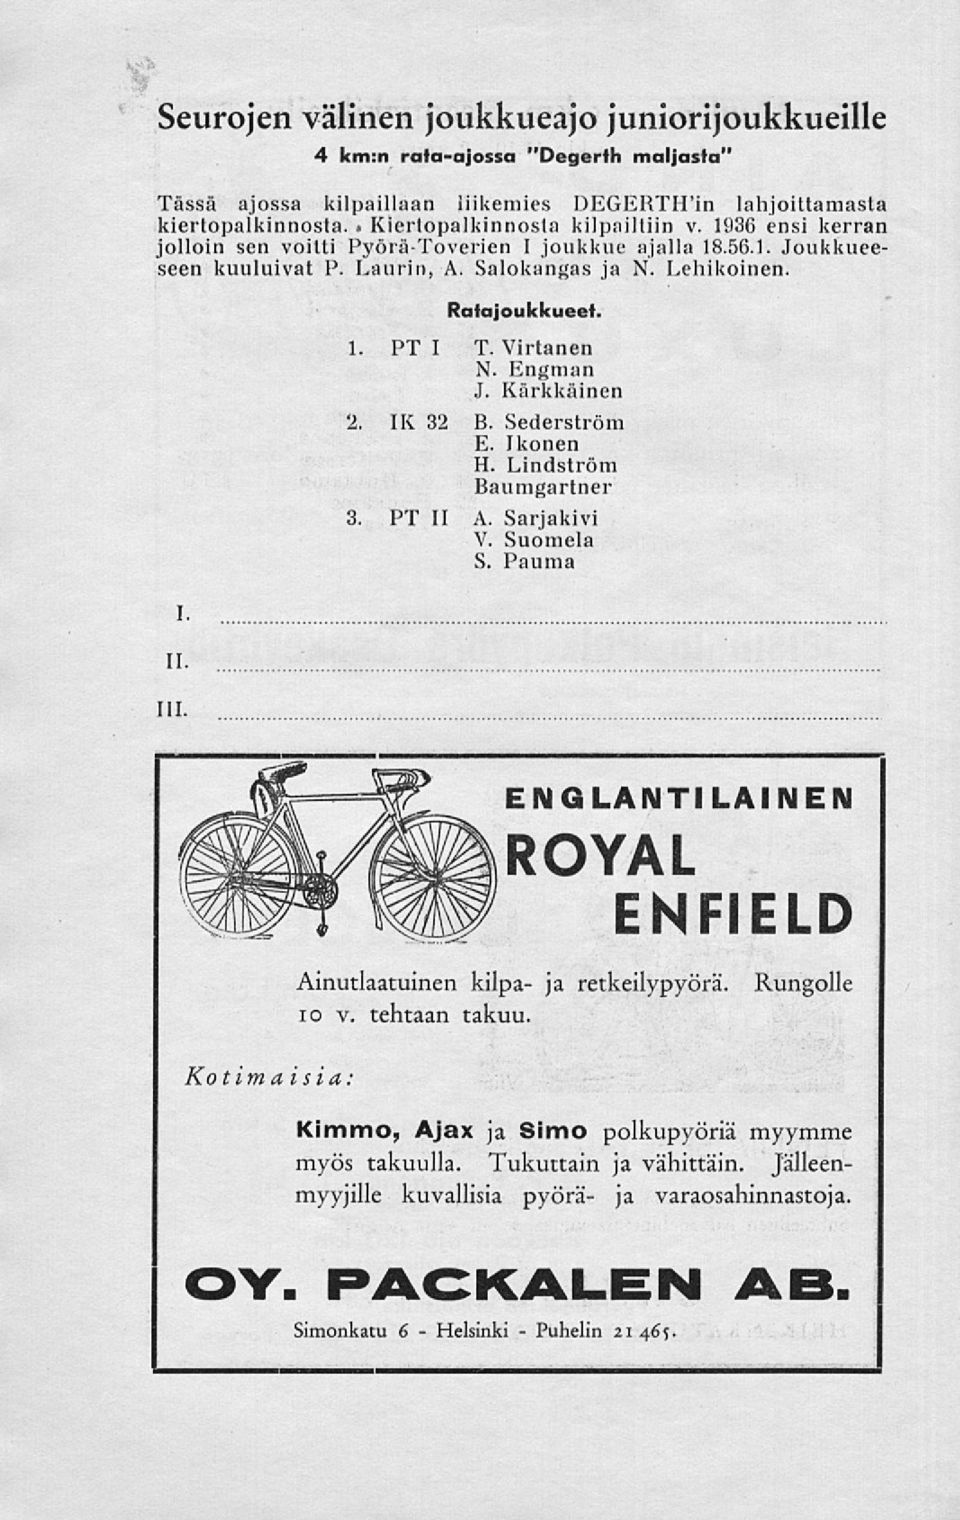 Ratajoukkueet. 1. PT I T. Virtanen N. Engman J. Kärkkäinen 2. IX 32 B. Sederström E. Ikonen H. Lindström Baumgartner 3. PT II A. Sarjakivi V. Suomela S.